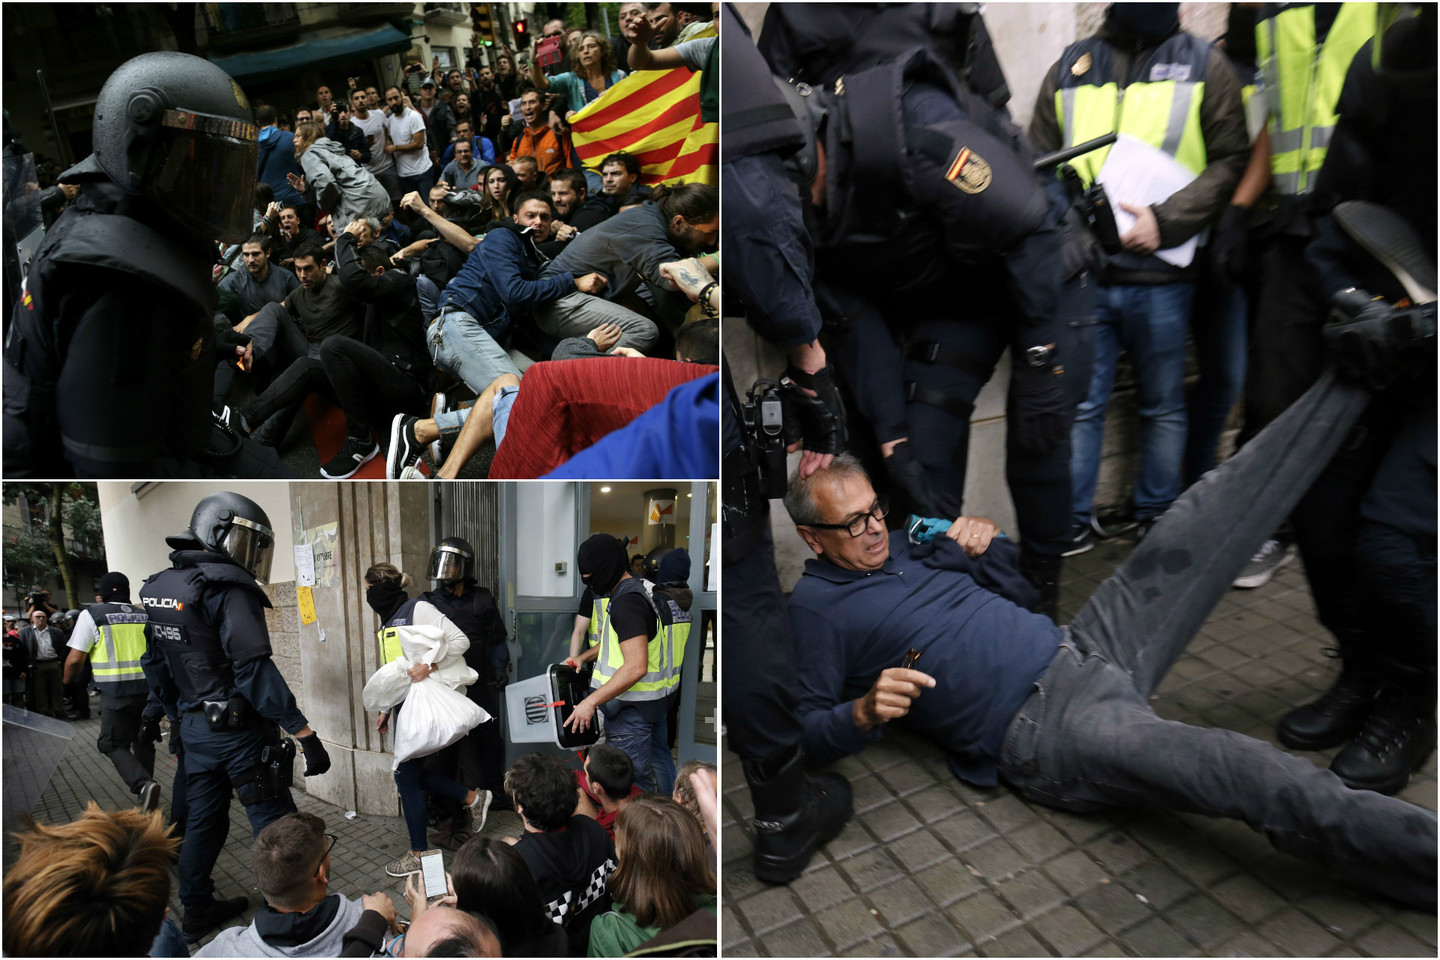  Katalonijoje riaušių policija atiminėja balsadėžes, o į kai kurias apylinkes laužėsi ir daužydama stiklą. <br> AFP/Scanpix nuotr. 